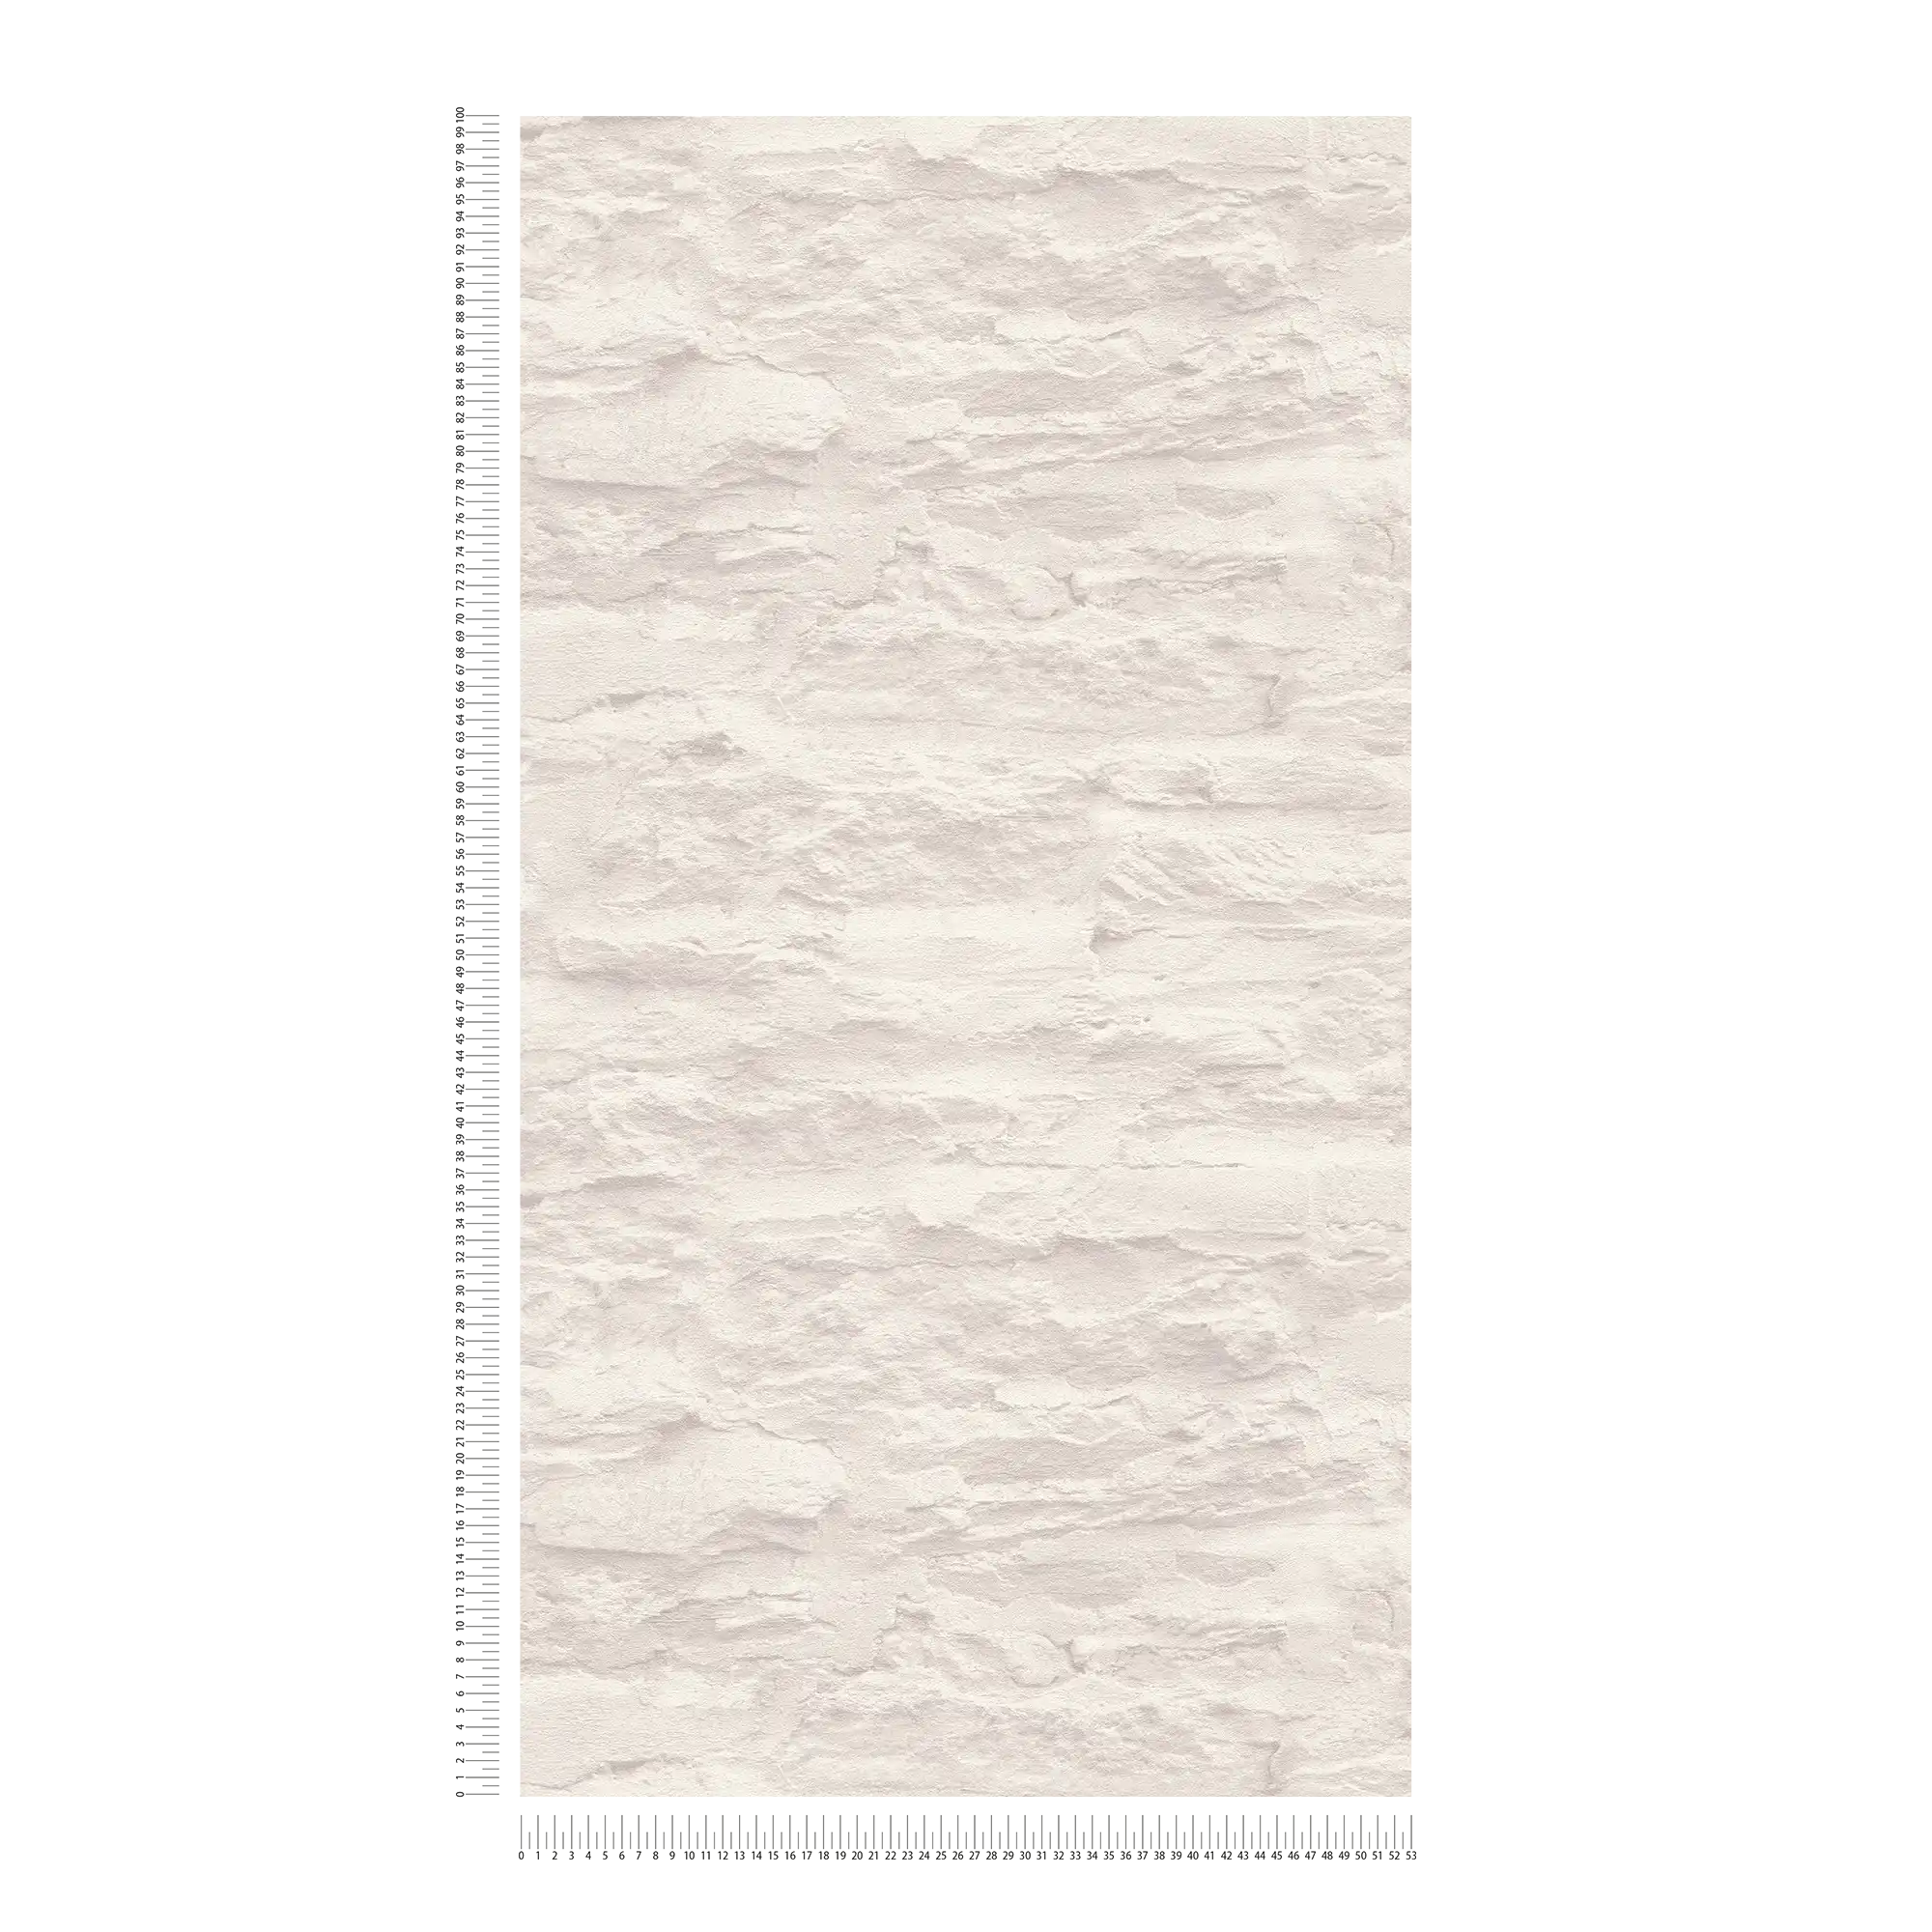             Carta da parati leggera in tessuto non tessuto in ottica murale con pietre naturali e intonaco - crema, bianco
        